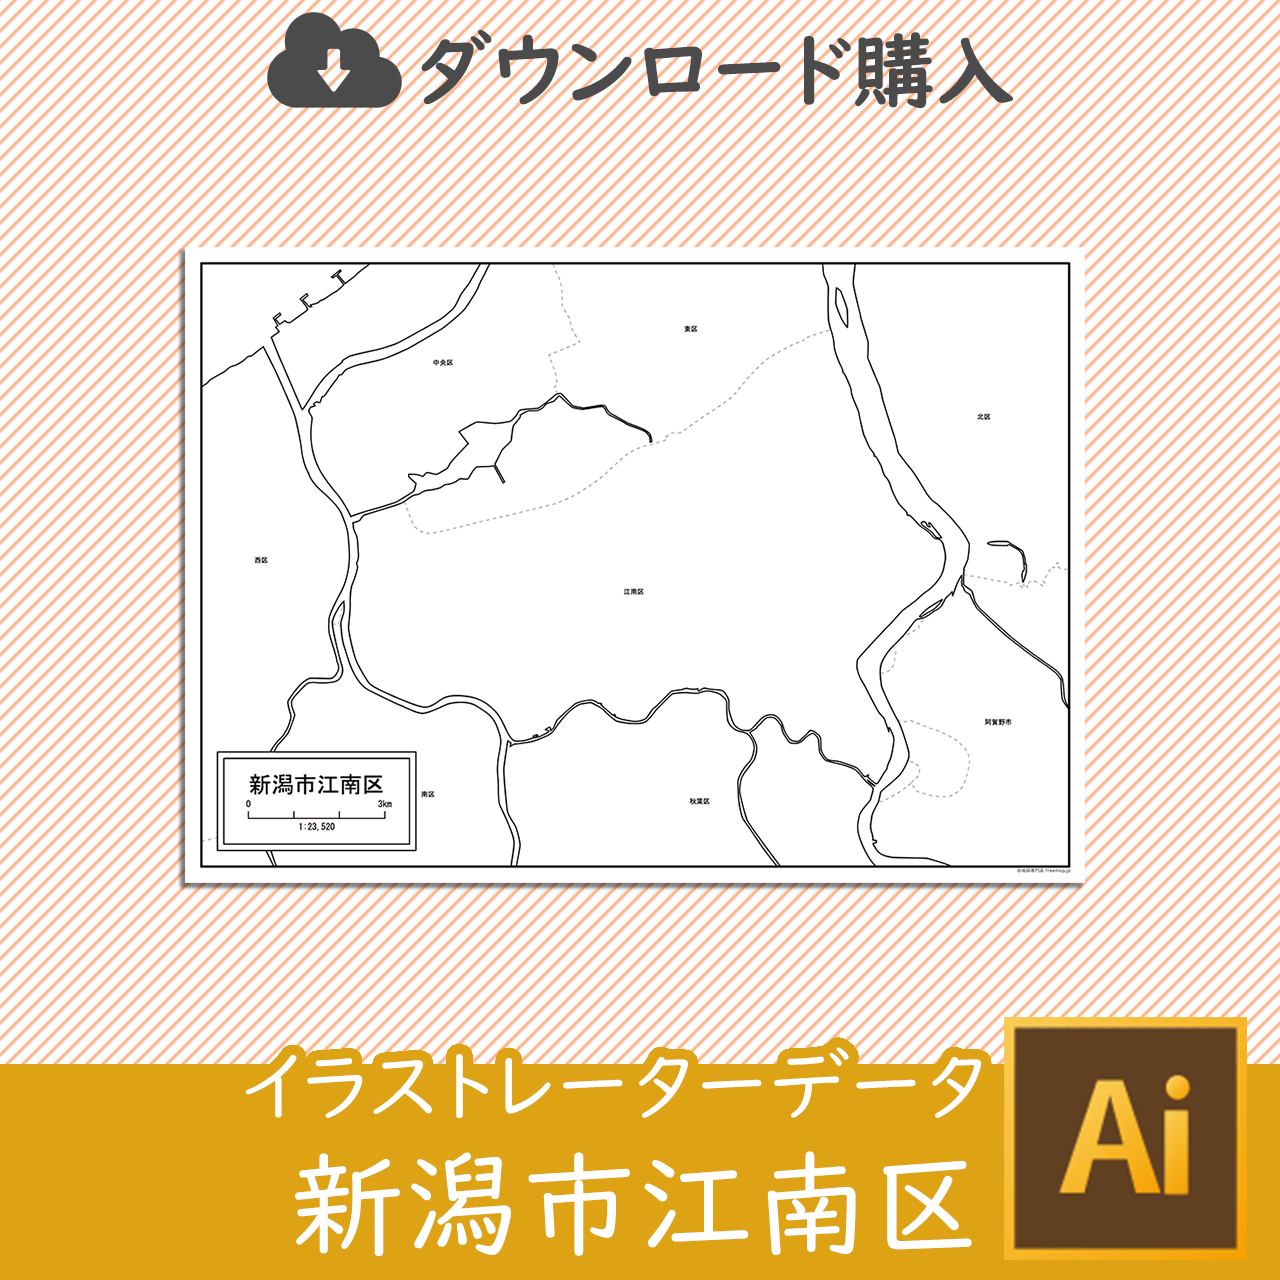 新潟市江南区のaiデータのサムネイル画像